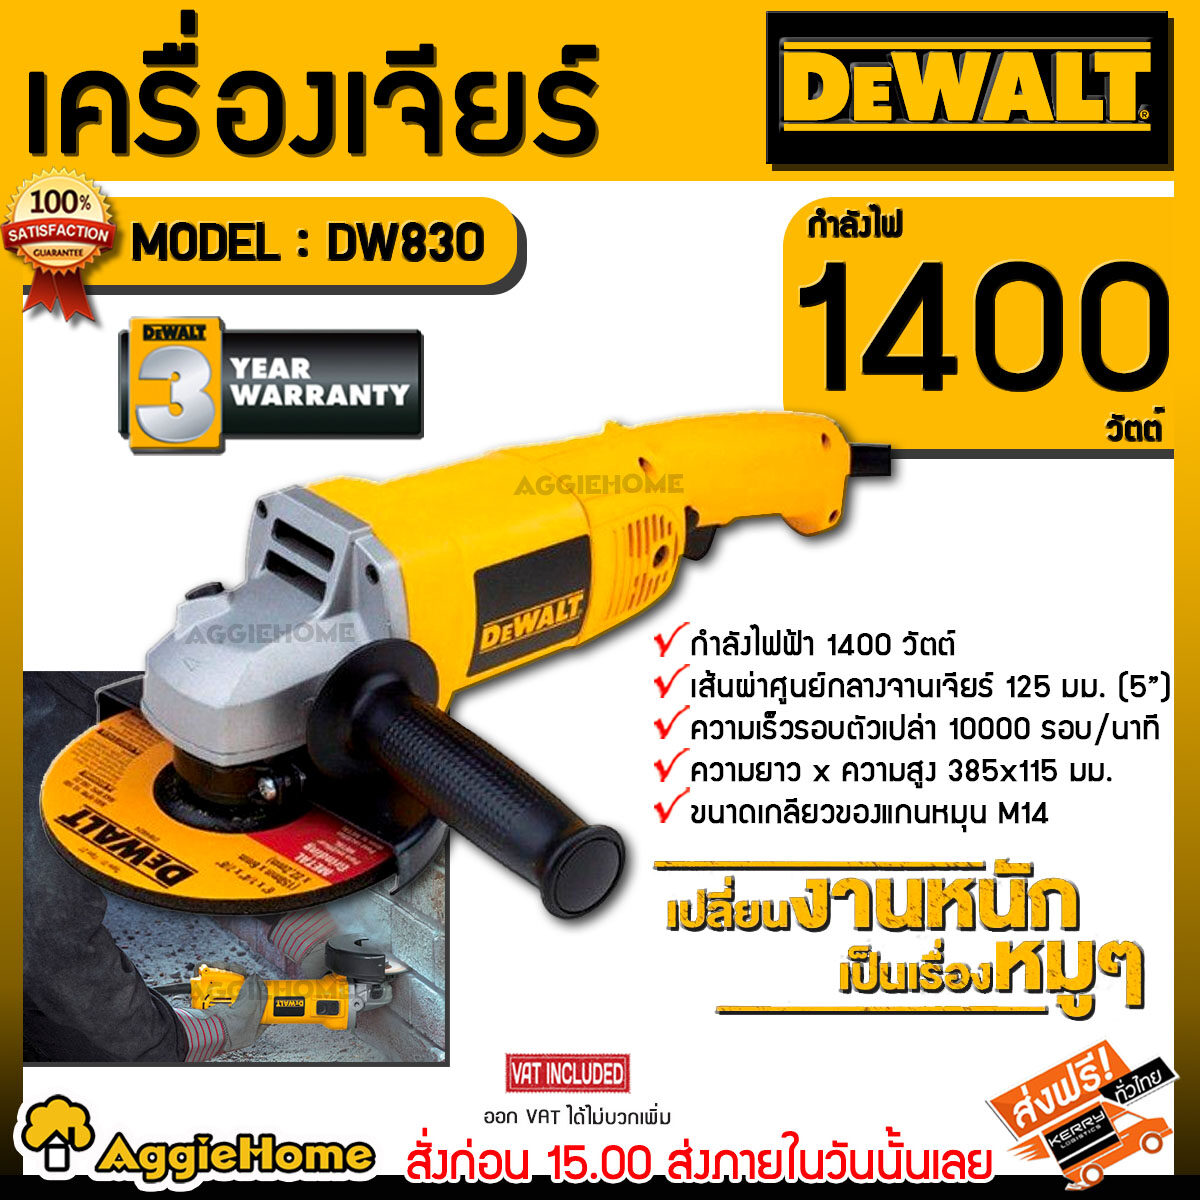 DEWALT เครื่องเจียร์ไฟฟ้า 5 นิ้ว รุ่น DW830